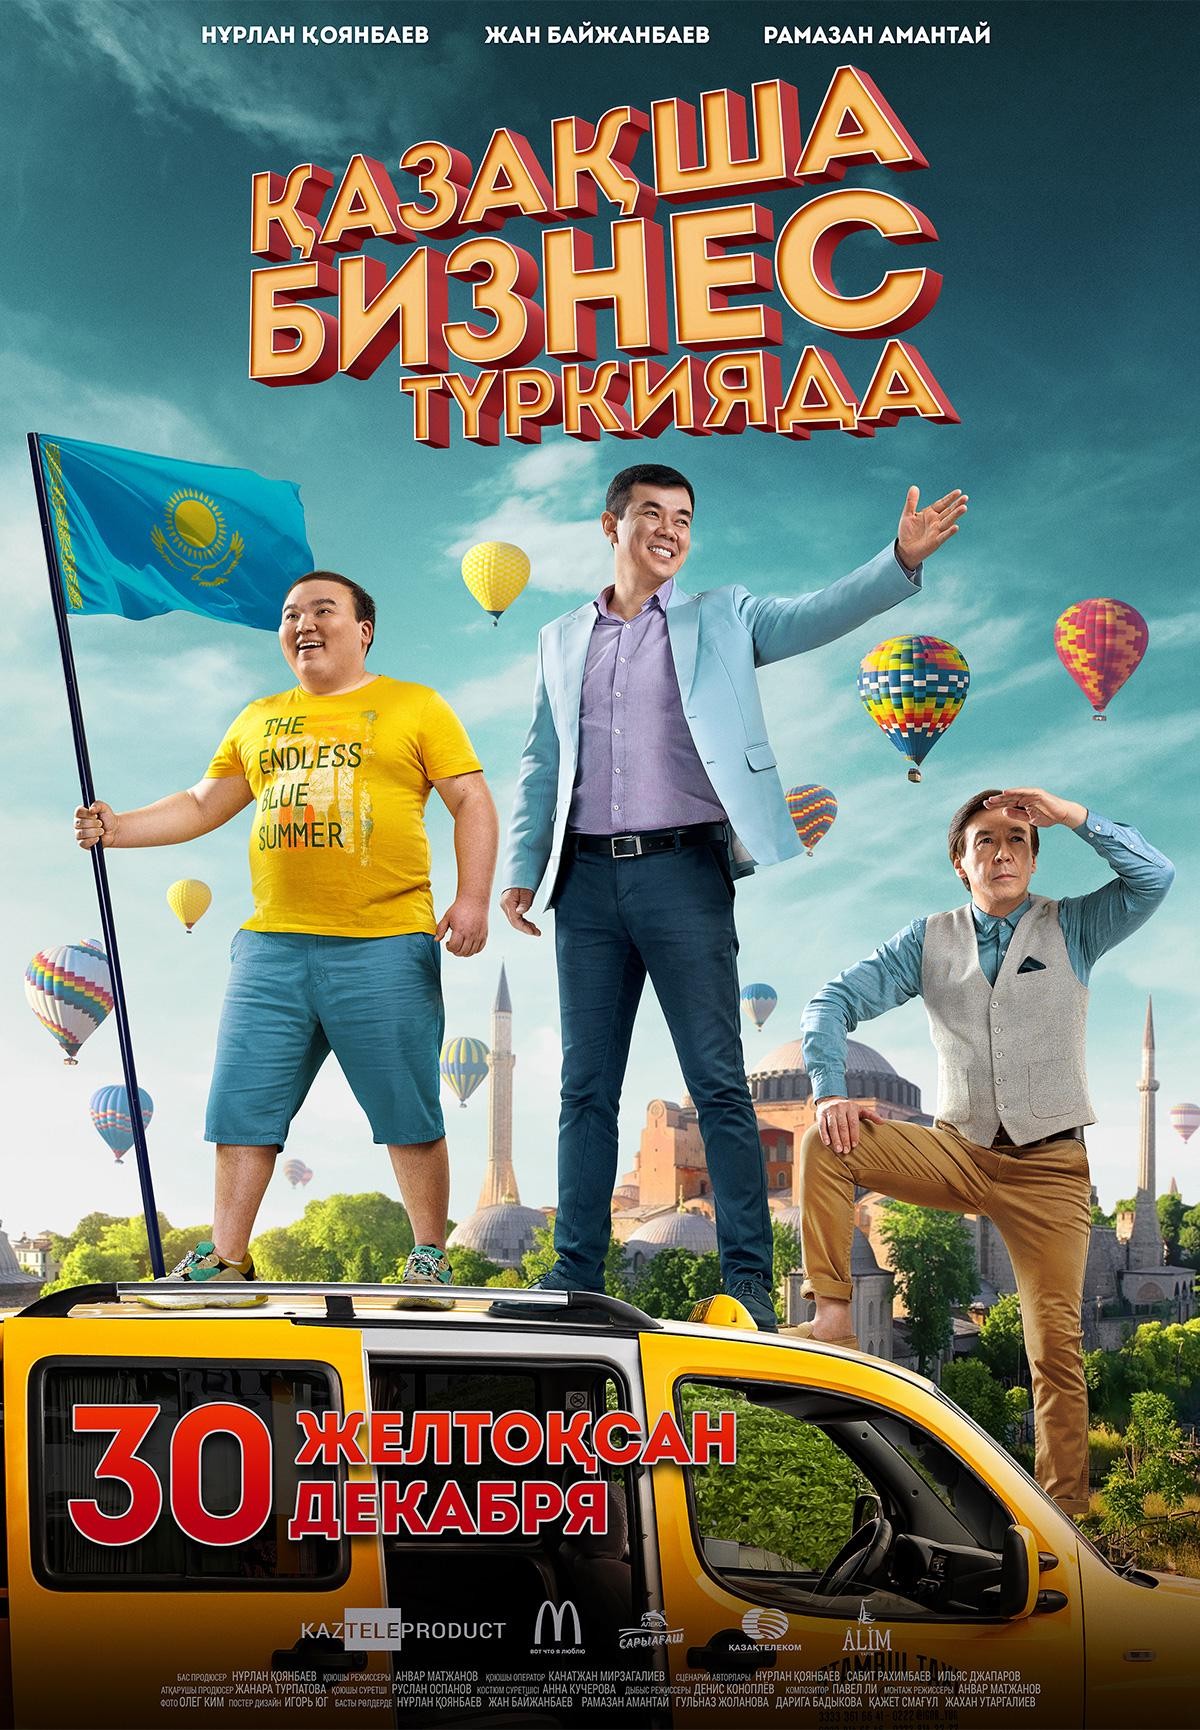 бизнес по казахский в турции